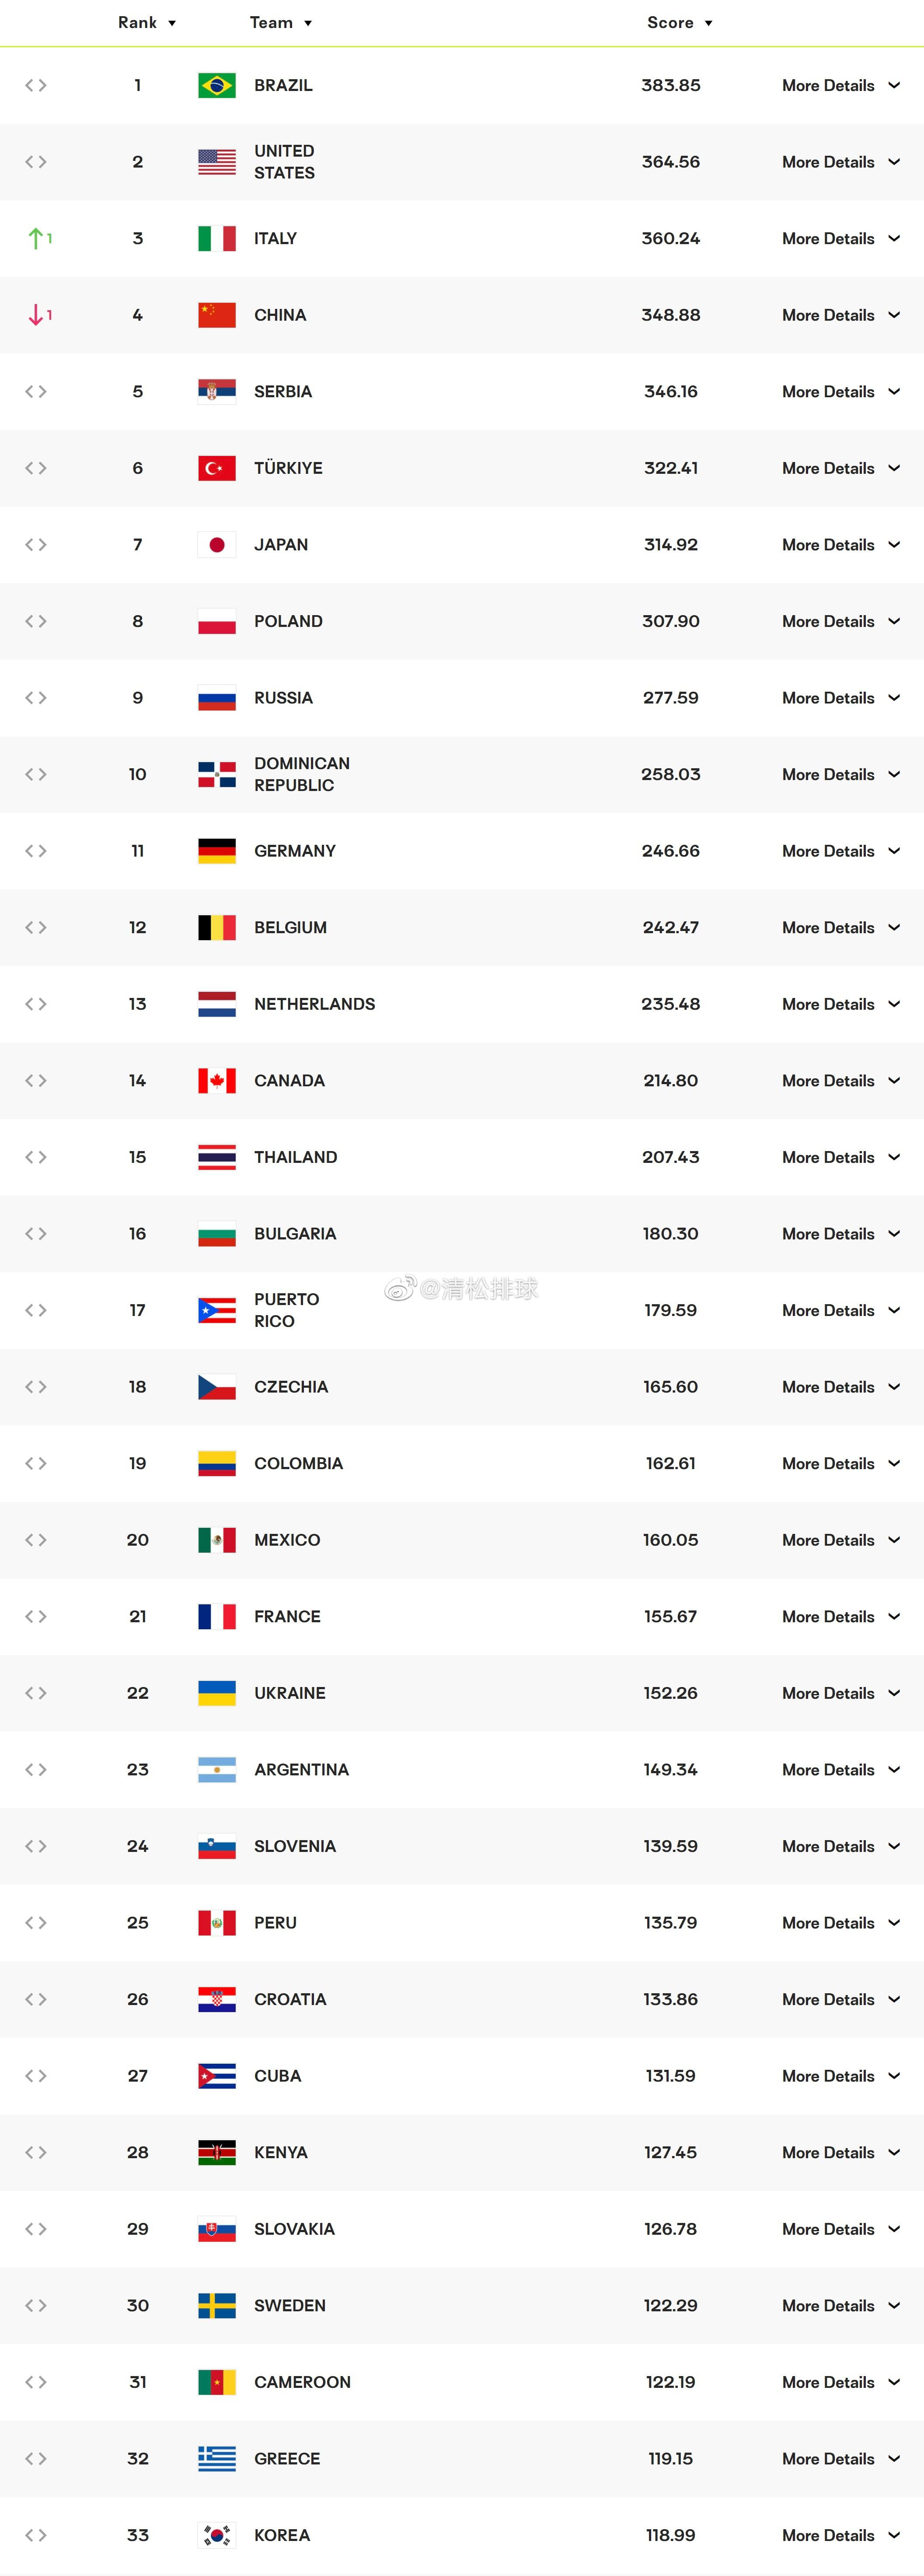 国际排联最新女排世界排名中国女排348.88分暂列第4巴西女排383.85分暂列(1)